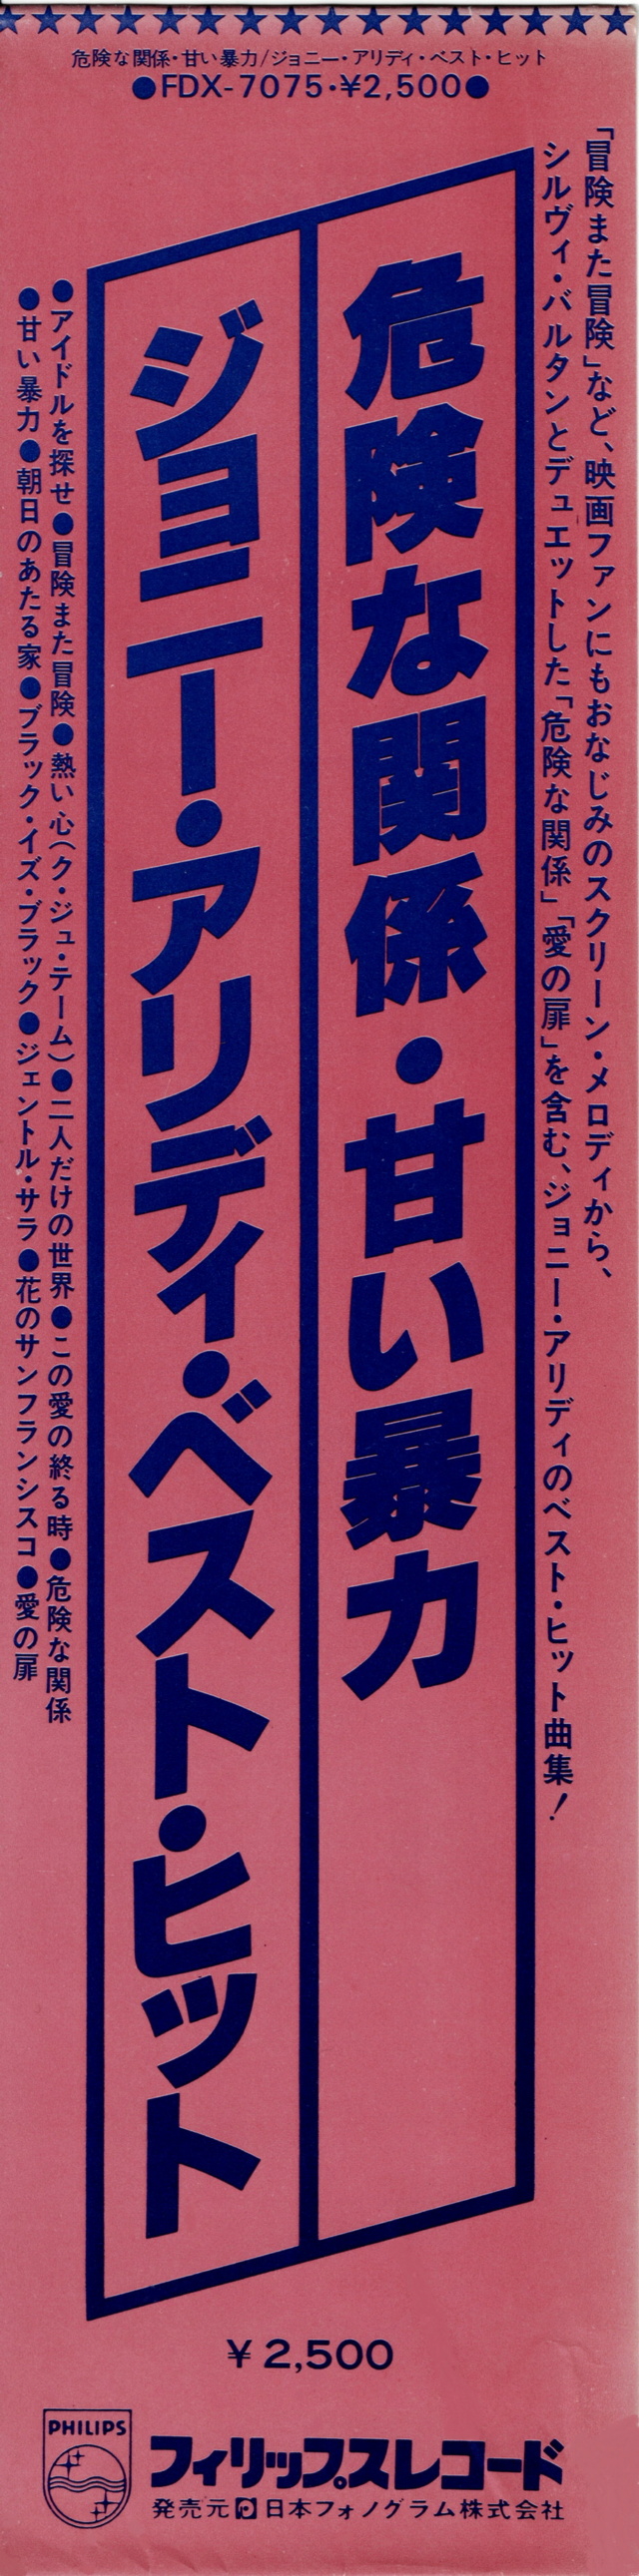 Discographie Japonaise - 4ème partie (33 T COMPILATION) - Page 15 Jpn_fd20